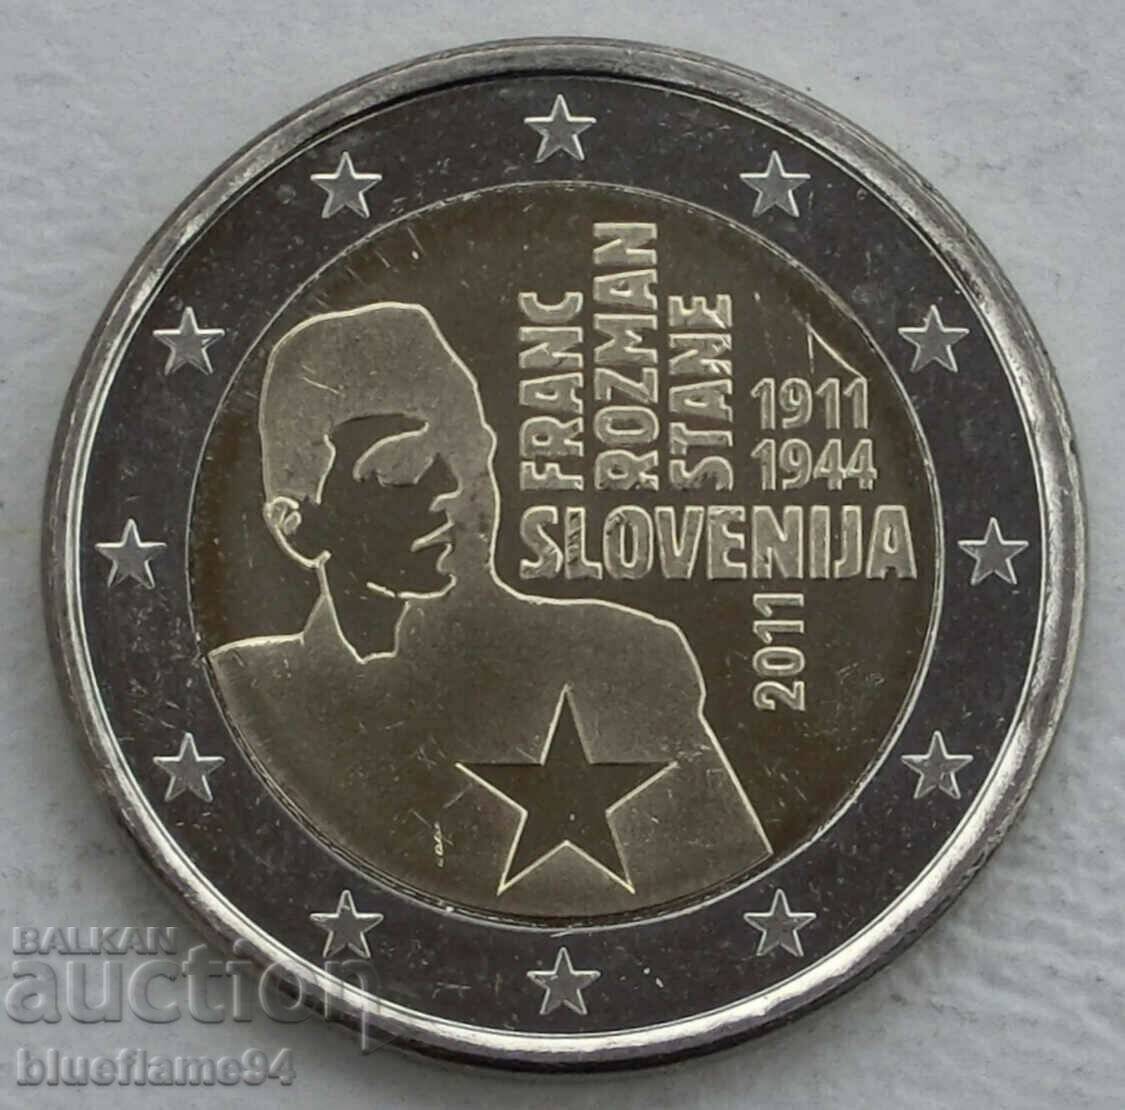 2 ευρώ Σλοβενία 2011